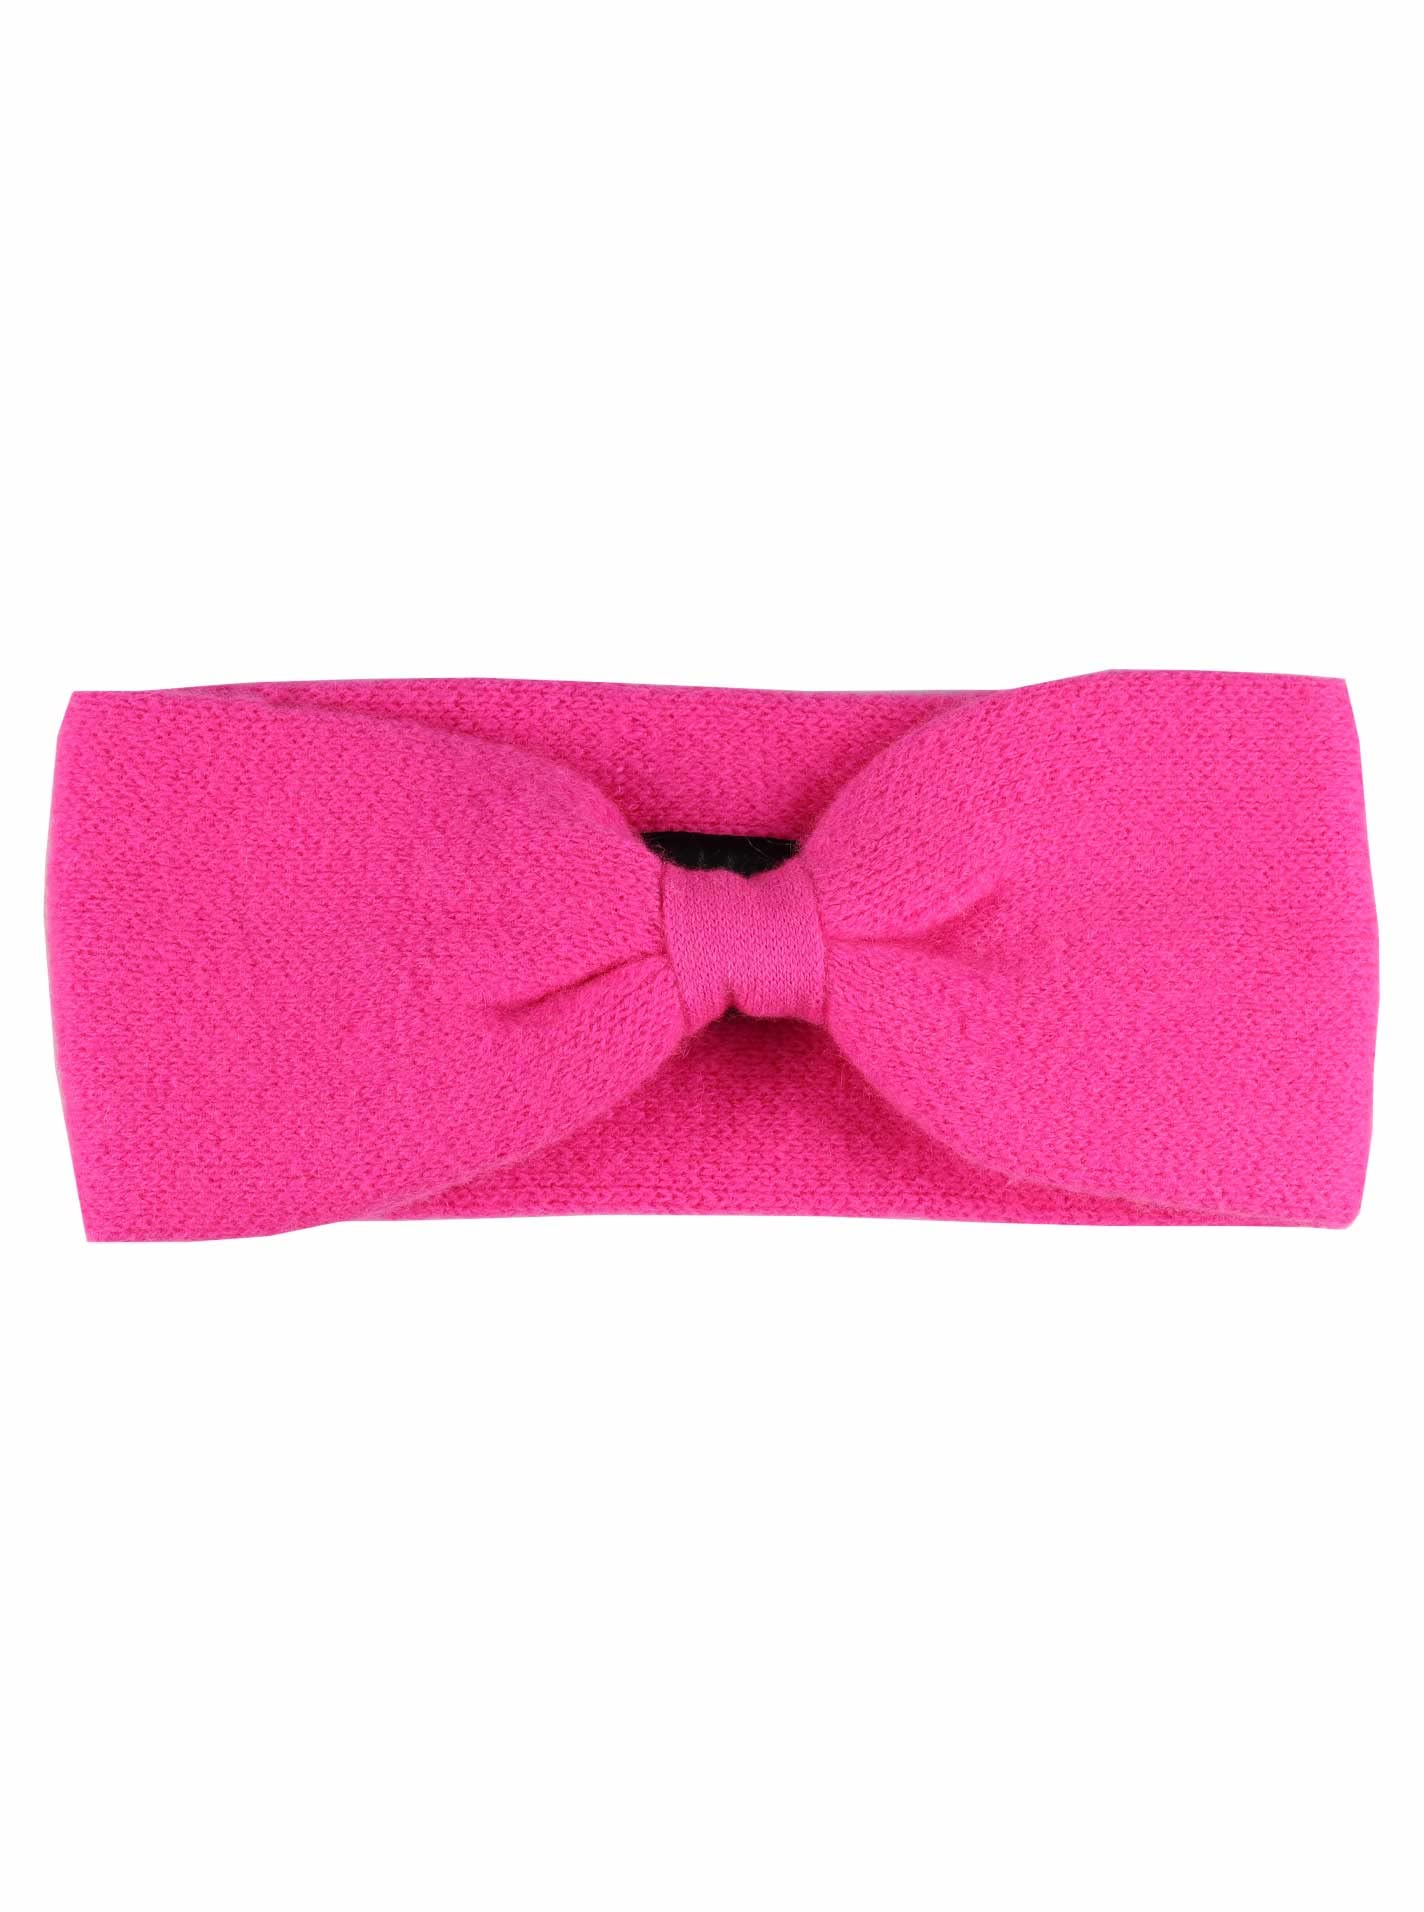 Zwillingsherz Stirnband aus 100% Kaschmir - Hochwertiges Kopfband im Uni Design für Damen Frauen Mädchen - Wolle - Haarband – warm und weich perfekt für Frühjahr Herbst Winter - n pink